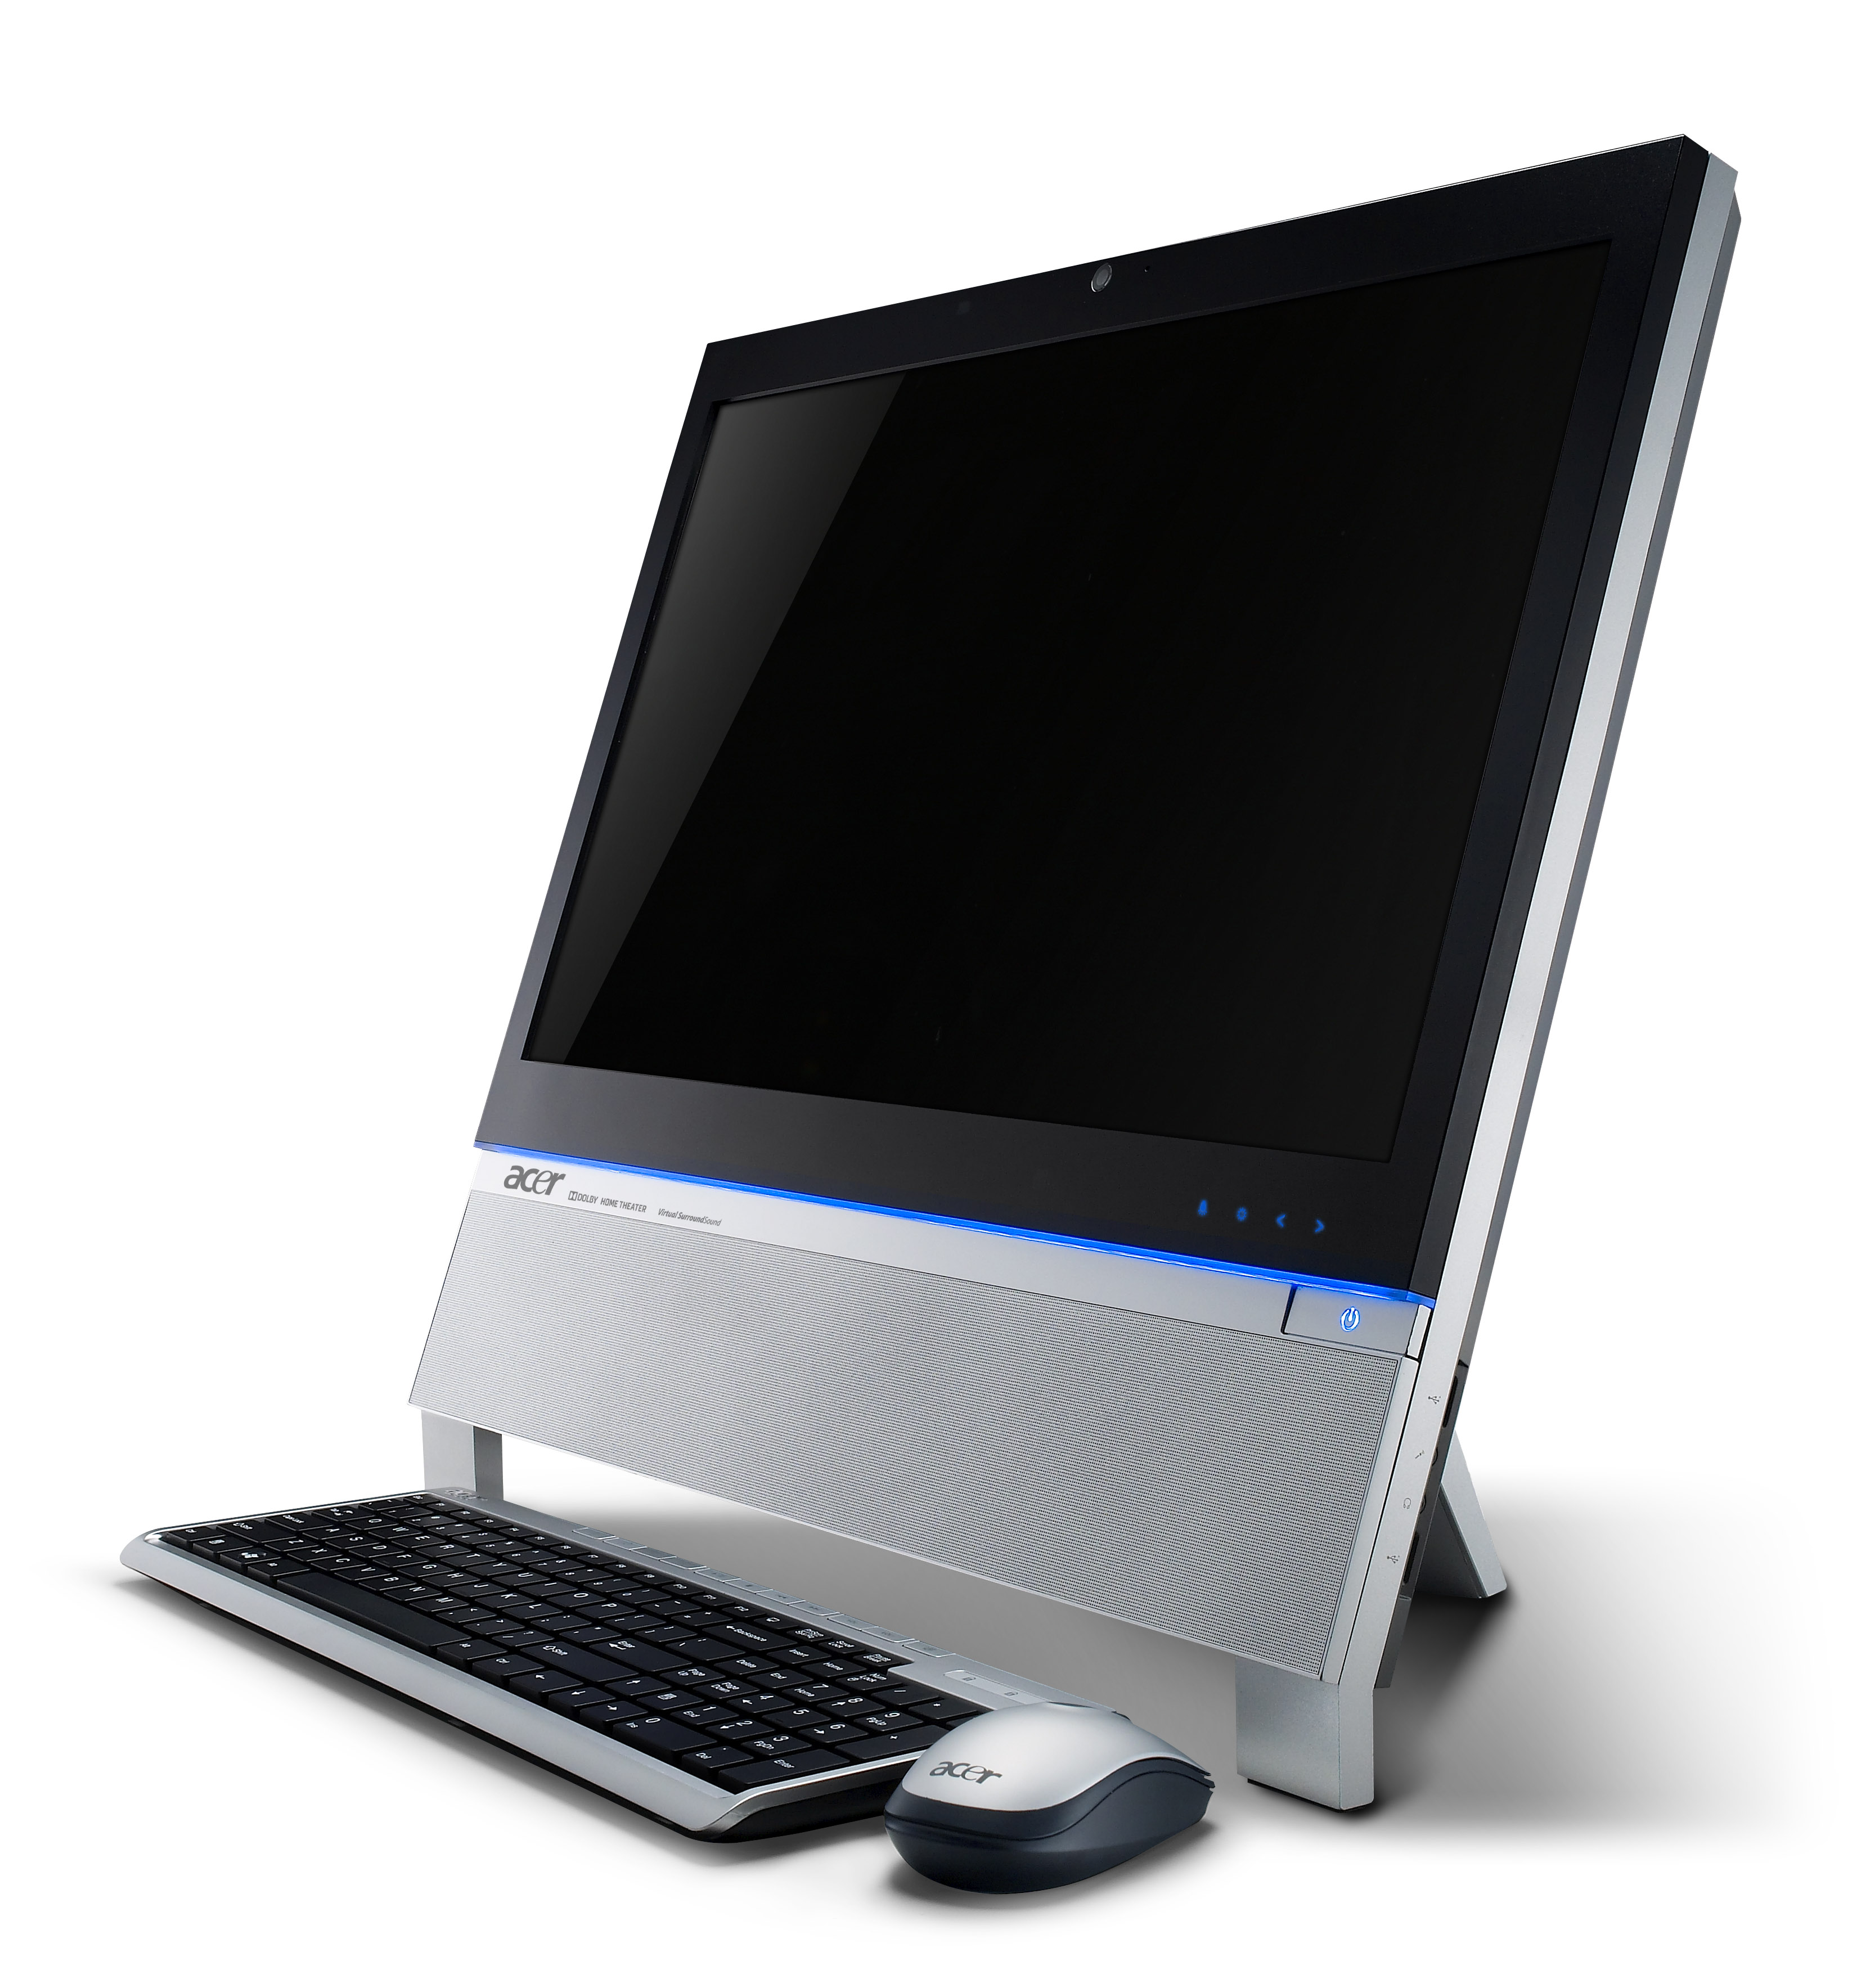 宏碁桌上型電腦具備3D藍光、纖薄美型、高效能